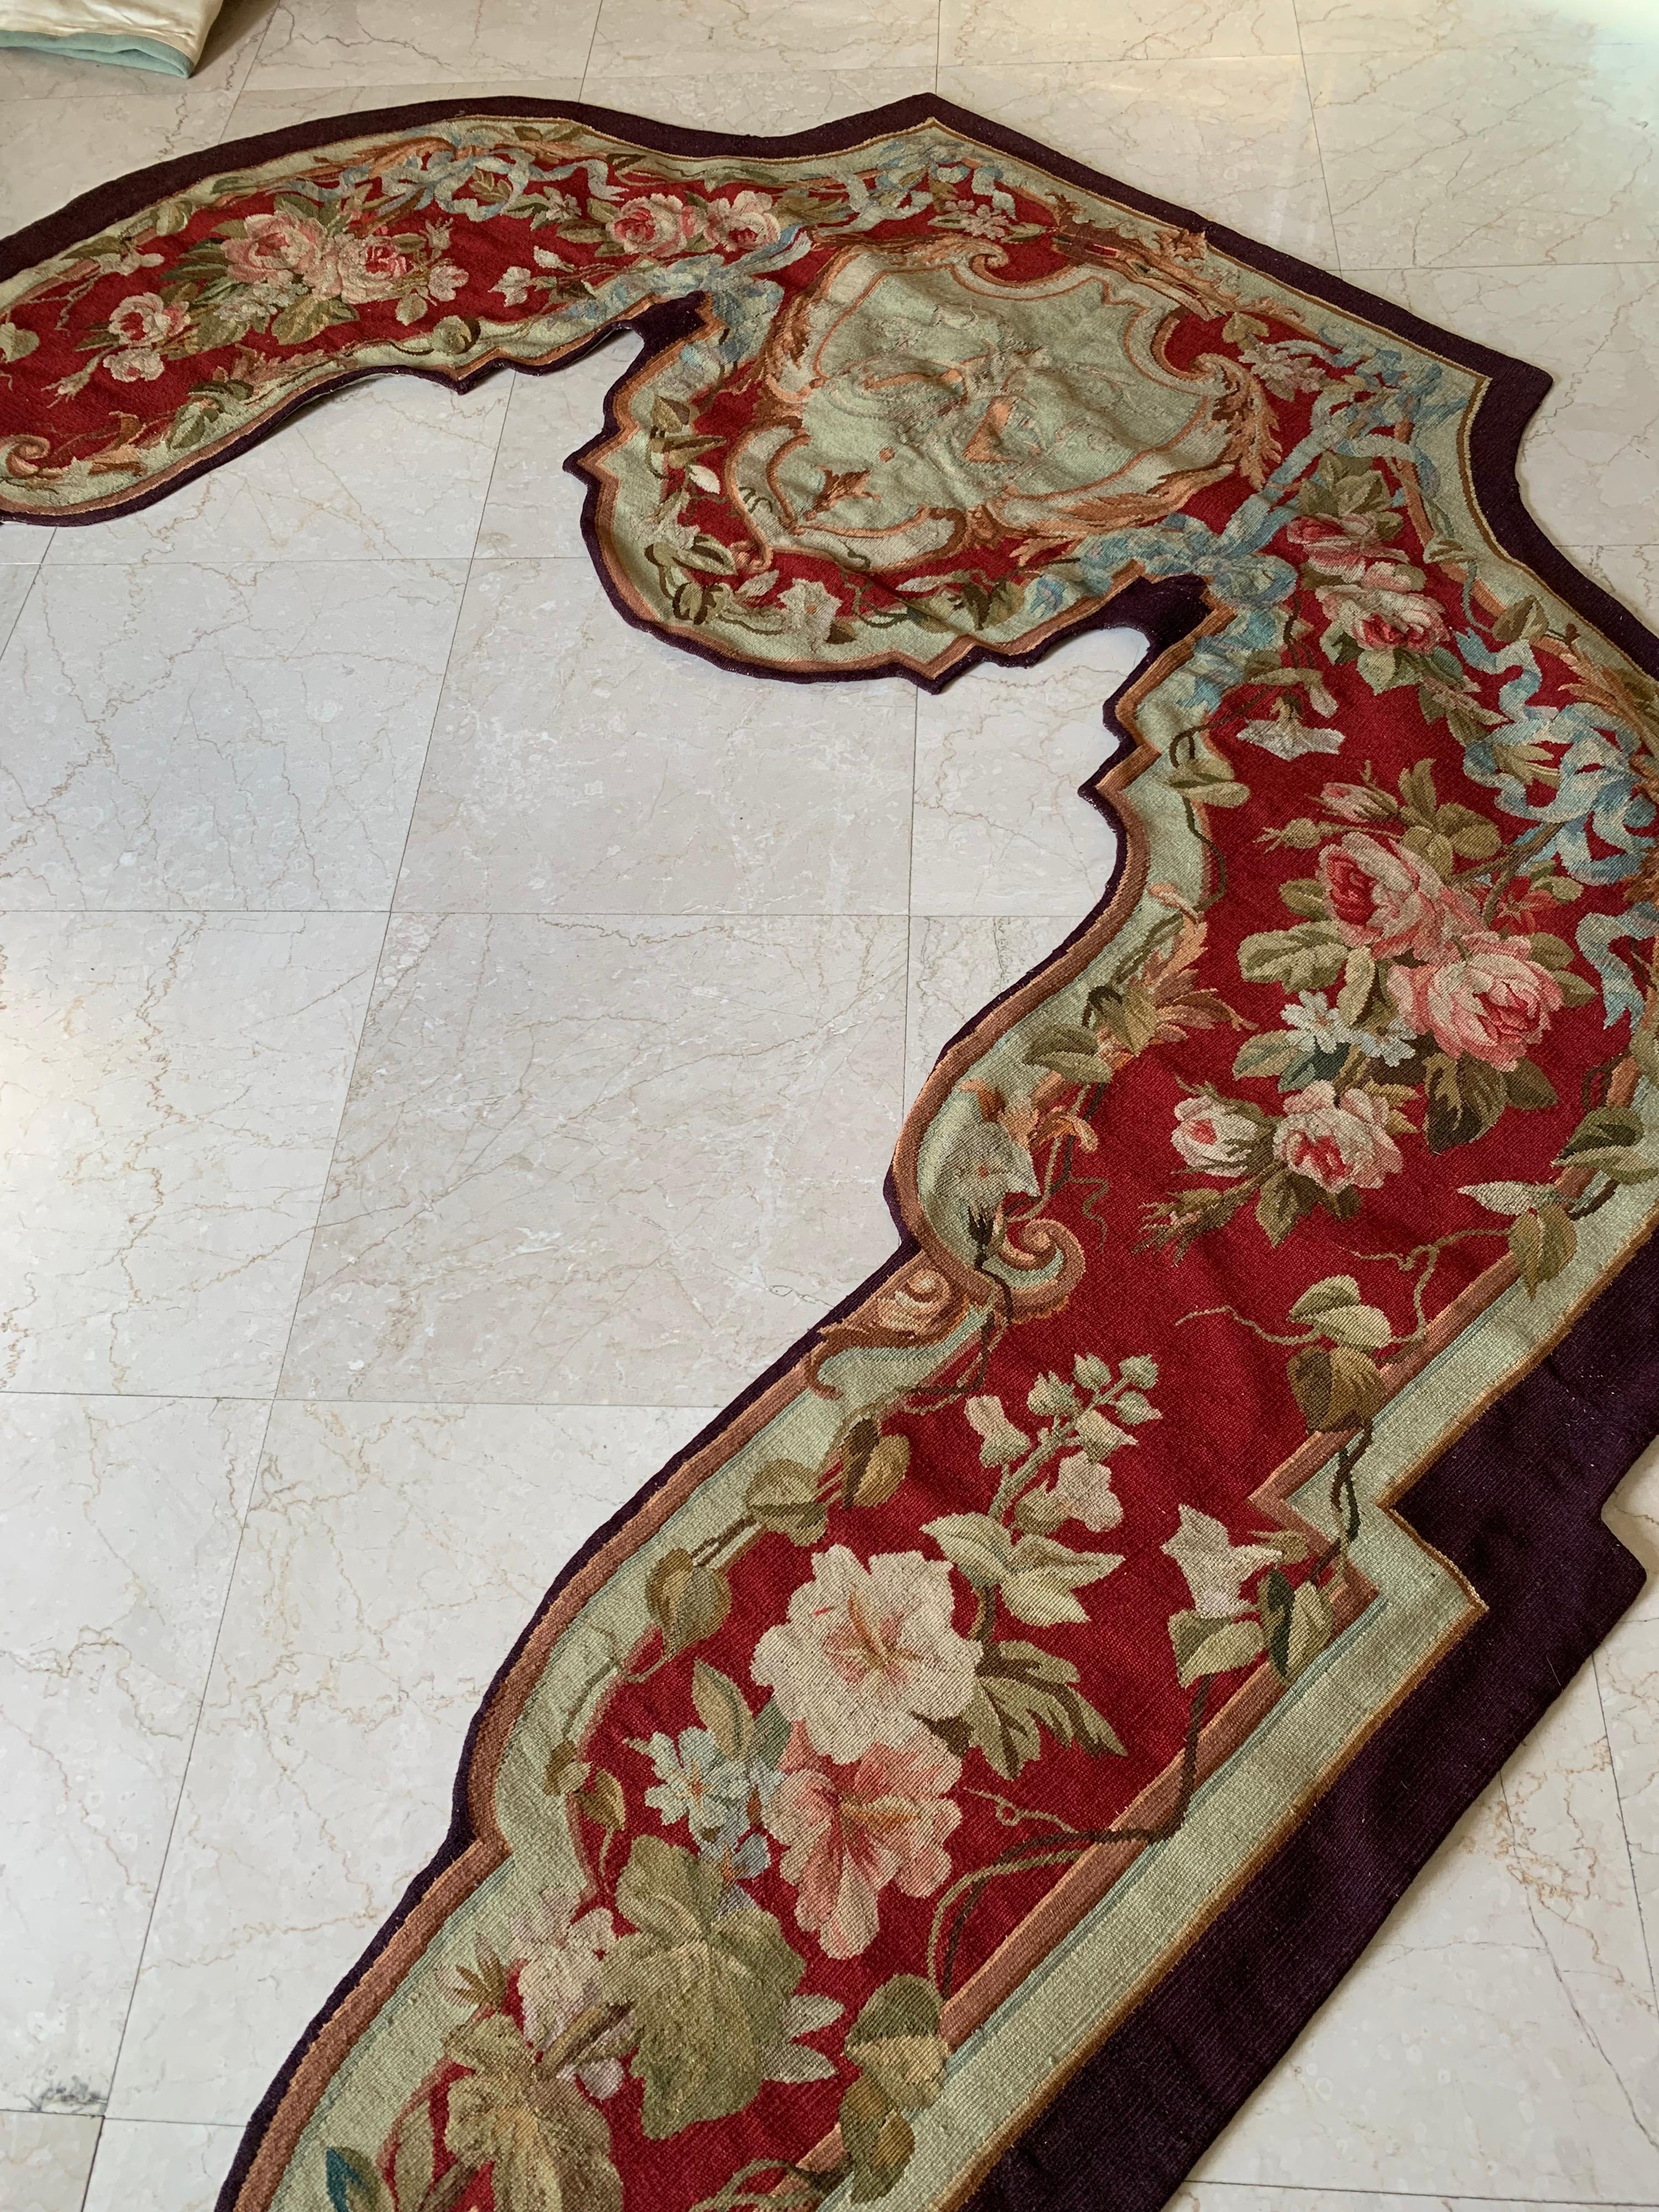 Diese antiken Wandteppiche, Portière genannt, wurden im 19. Jahrhundert in Aubusson, Frankreich, handgewebt. Beide sind mit Blumen- und Laubdekor in einer tiefroten und beigen Farbpalette versehen. Portière-Wandteppiche wurden in den vergangenen